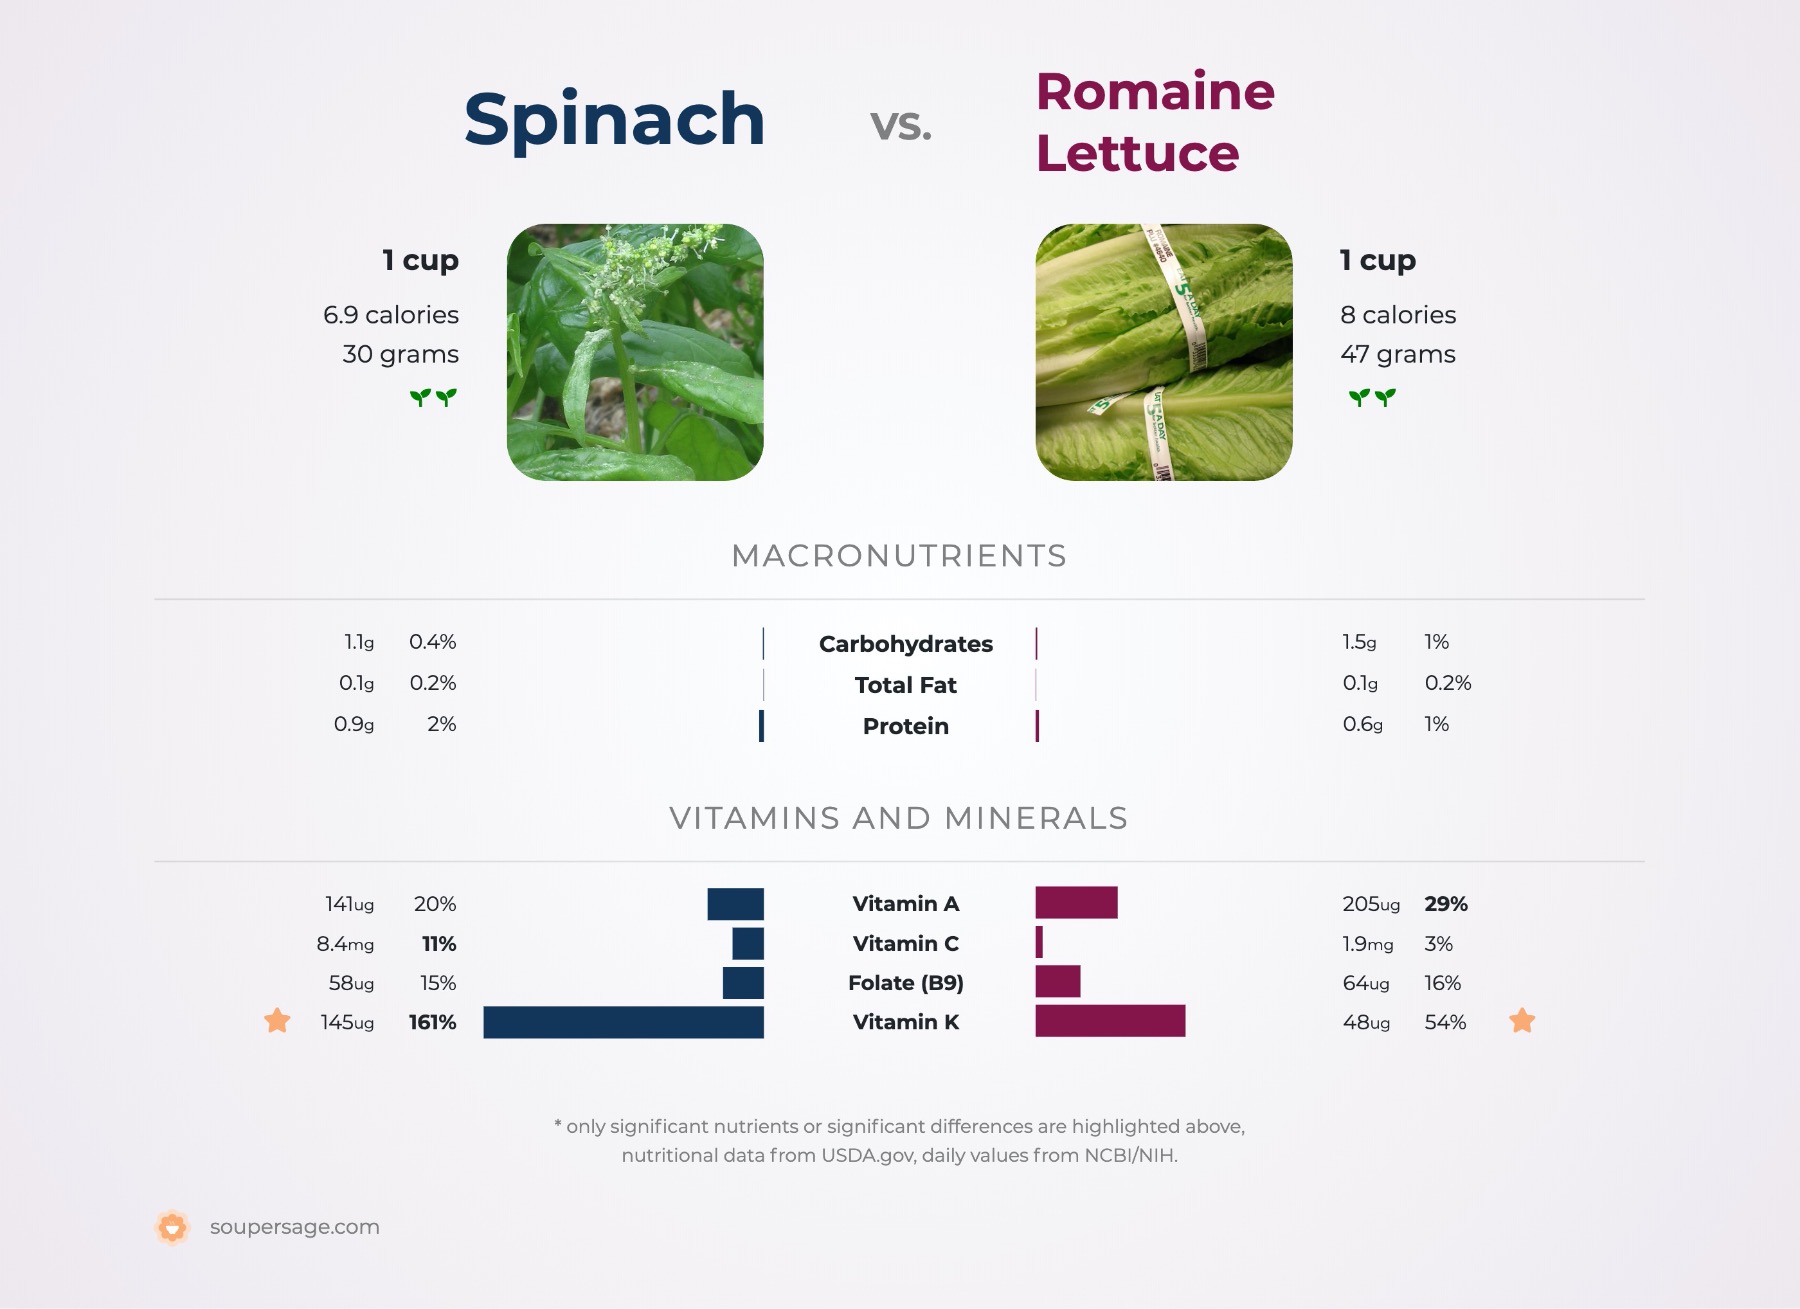 nutrition comparison of romaine lettuce vs. spinach